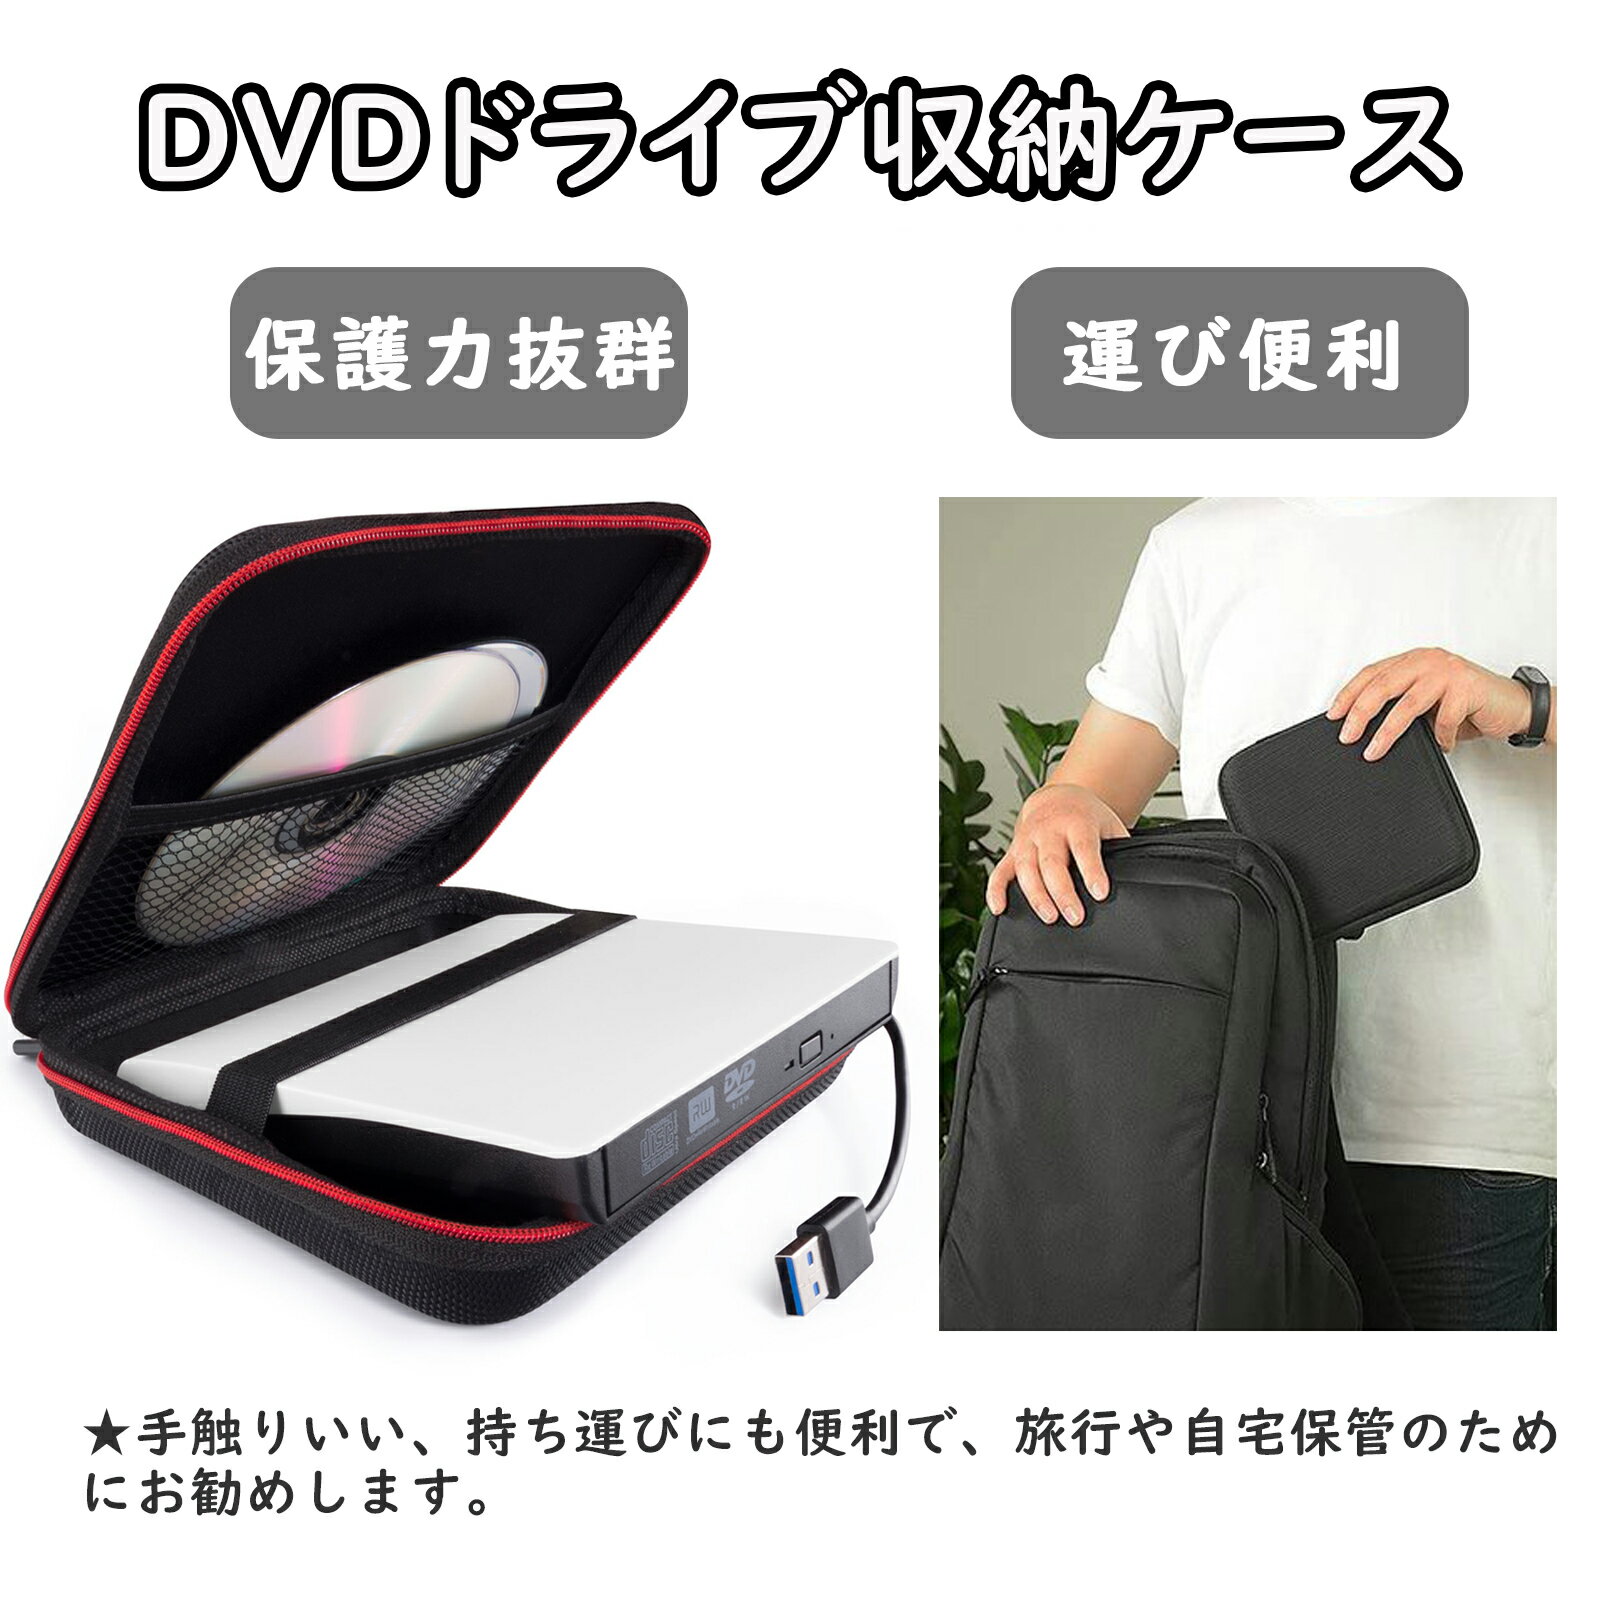 DVD ドライブ 収納ケース 外付け ドライブ 保護カバー 